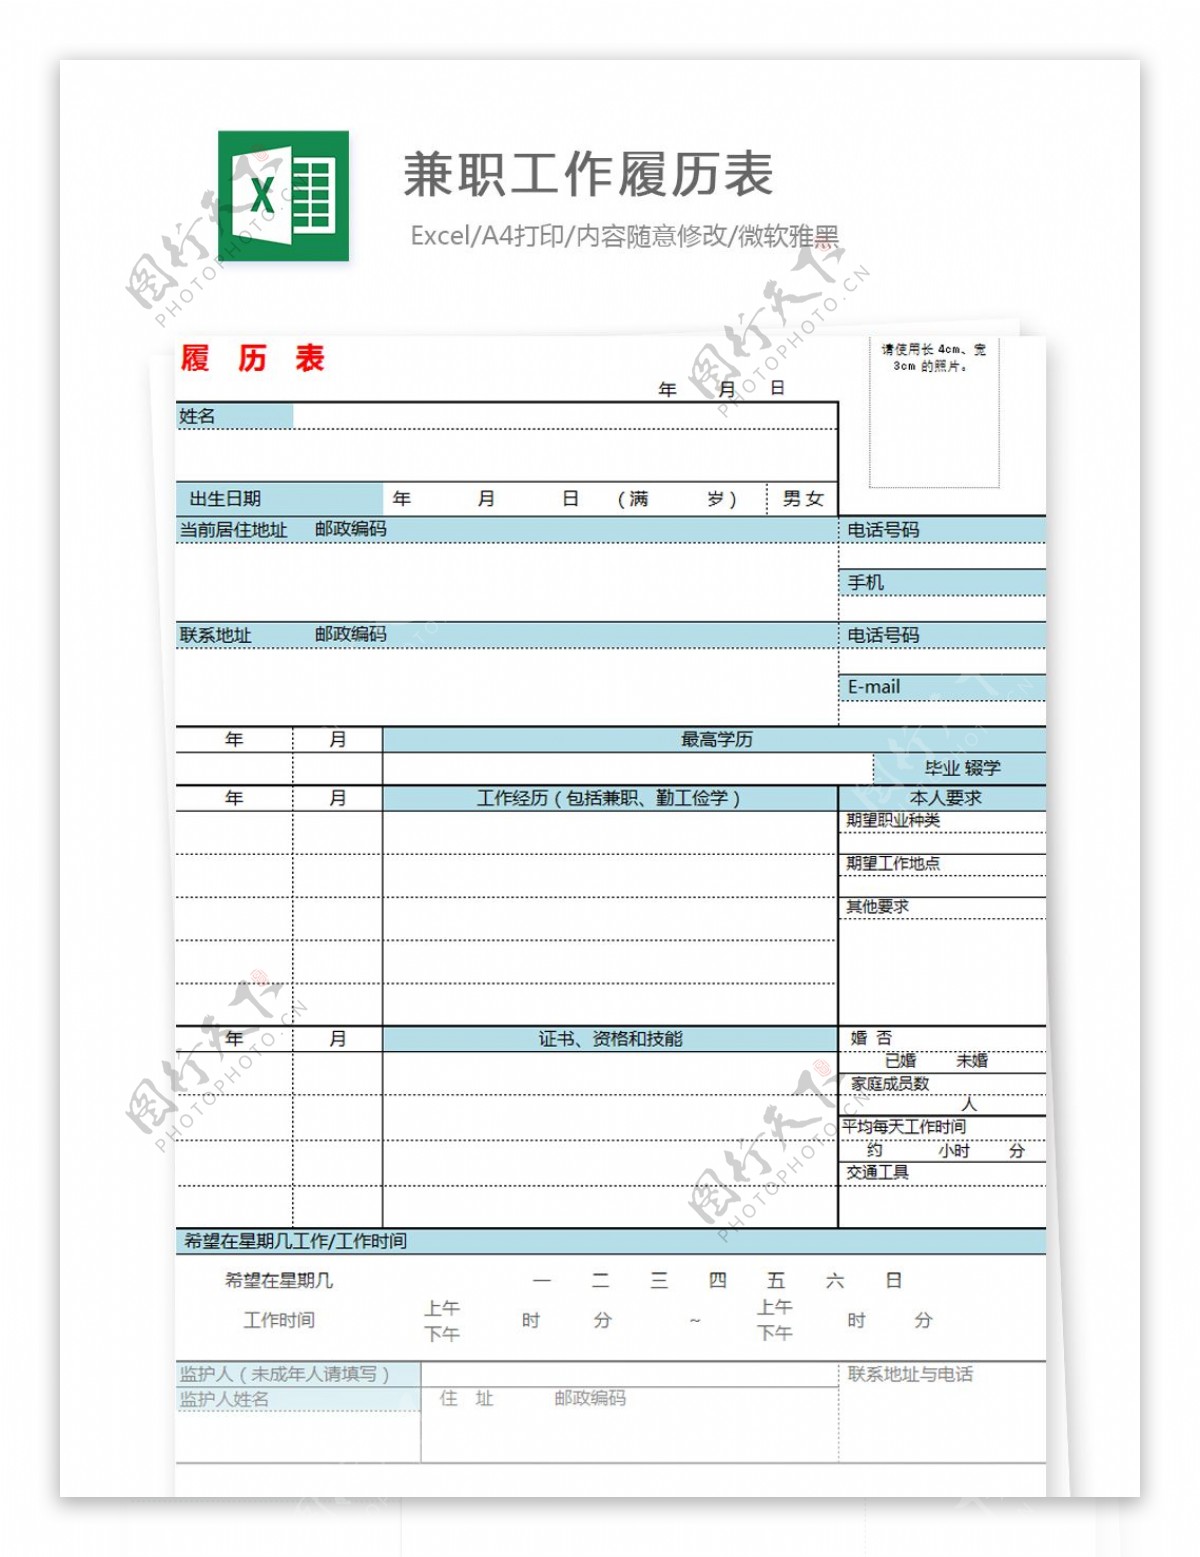 兼职工作履历表Excel文档